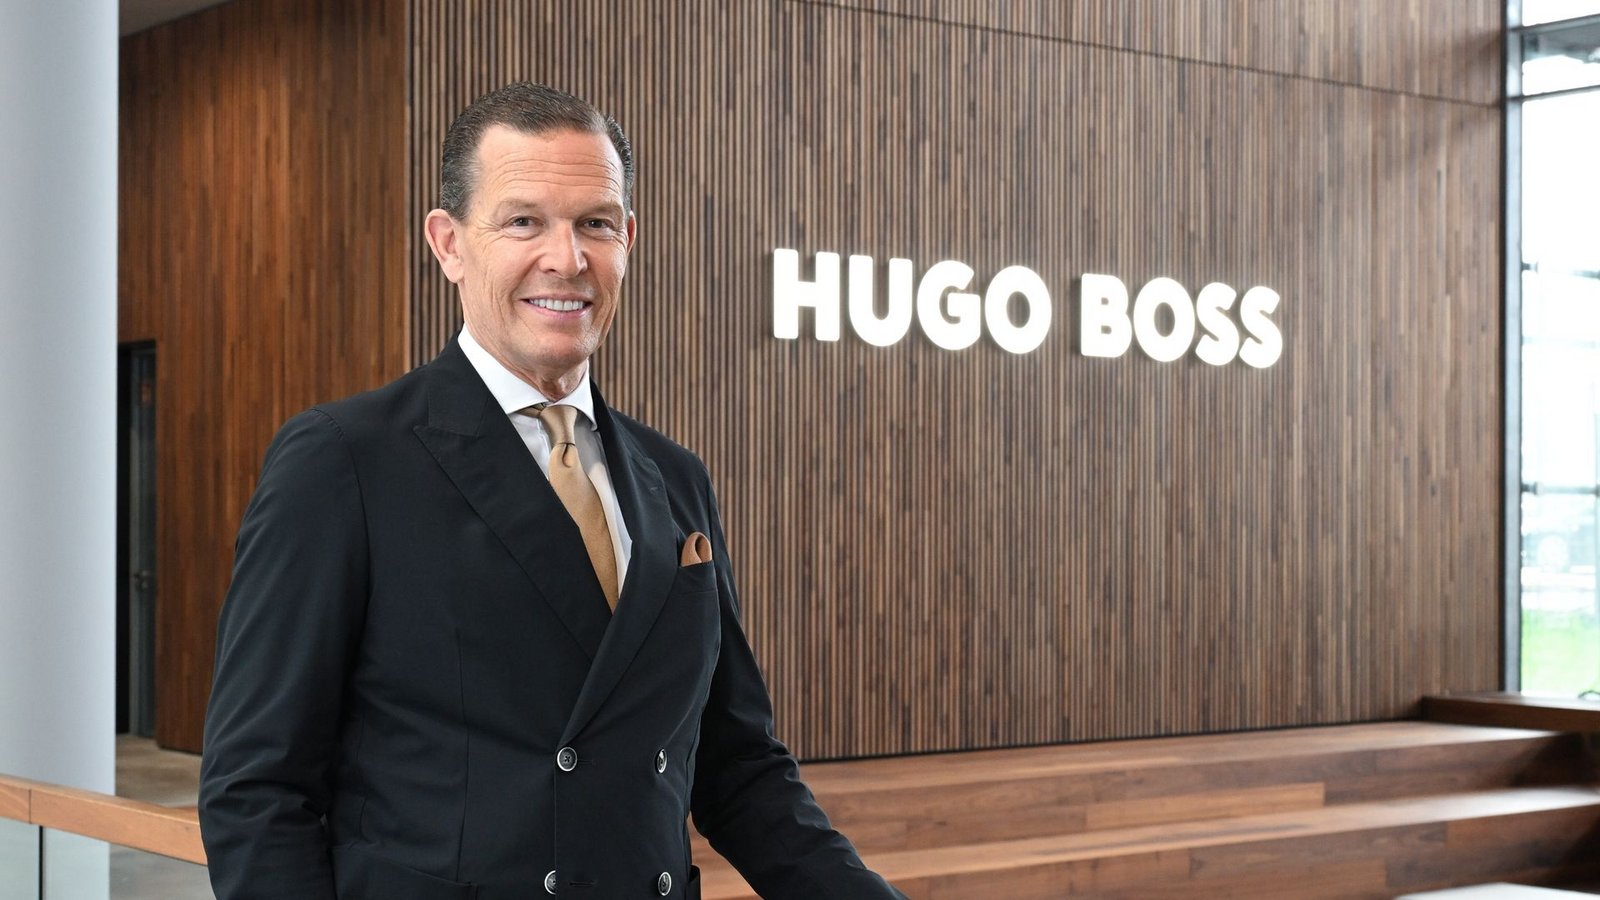 Daniel Grieder ist der Vorstandsvorsitzende des Modekonzerns Hugo Boss.Foto: Bernd Weißbrod/dpa